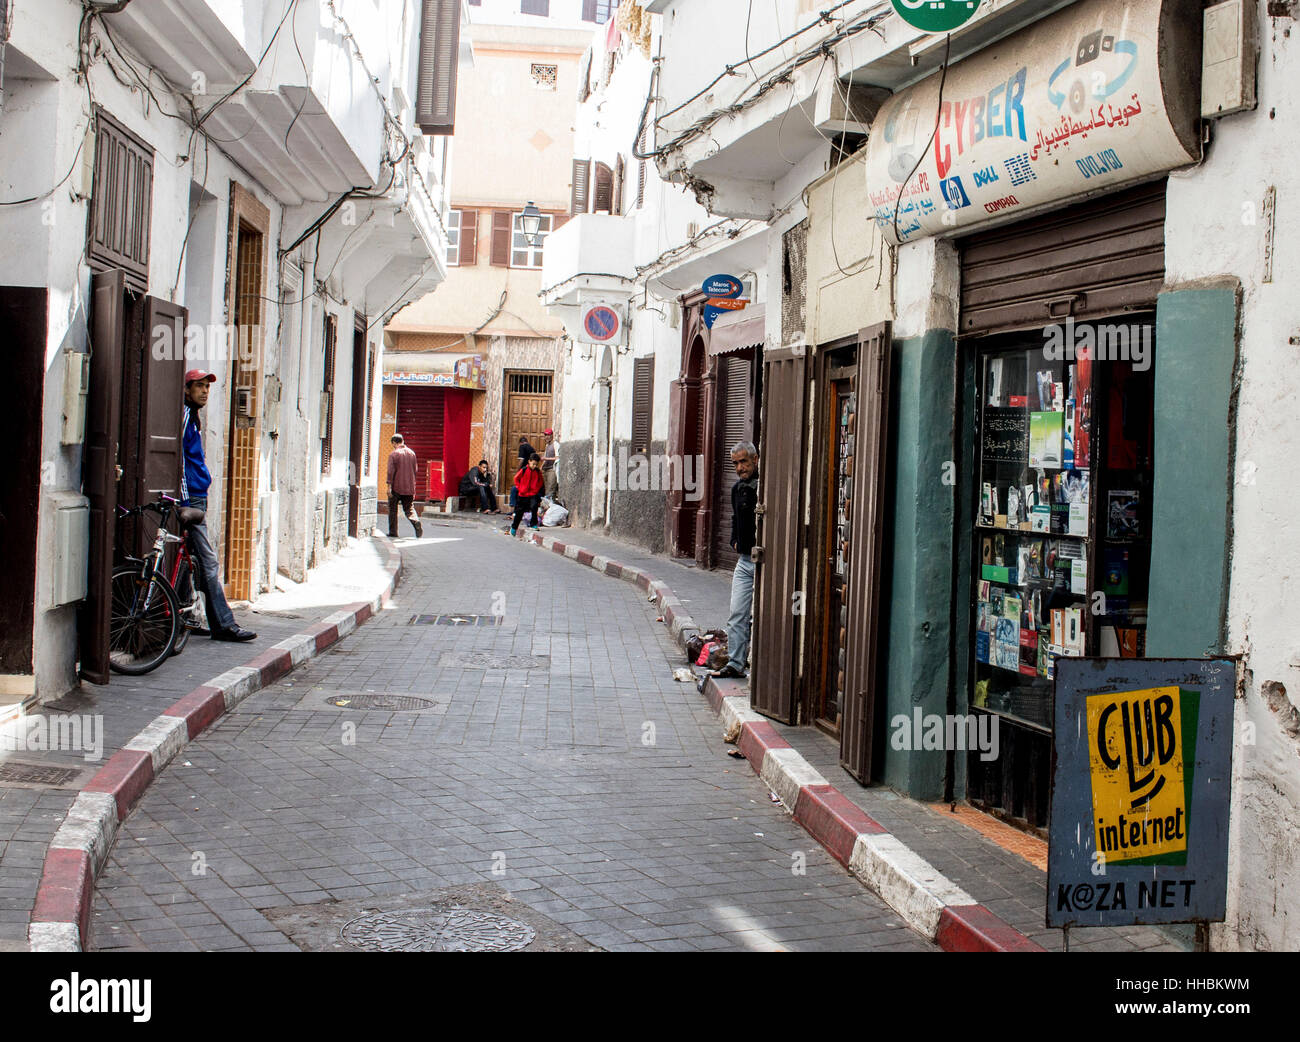 Ciber Cafe in a narrow street in Casablanca, Morocco. Stock Photo